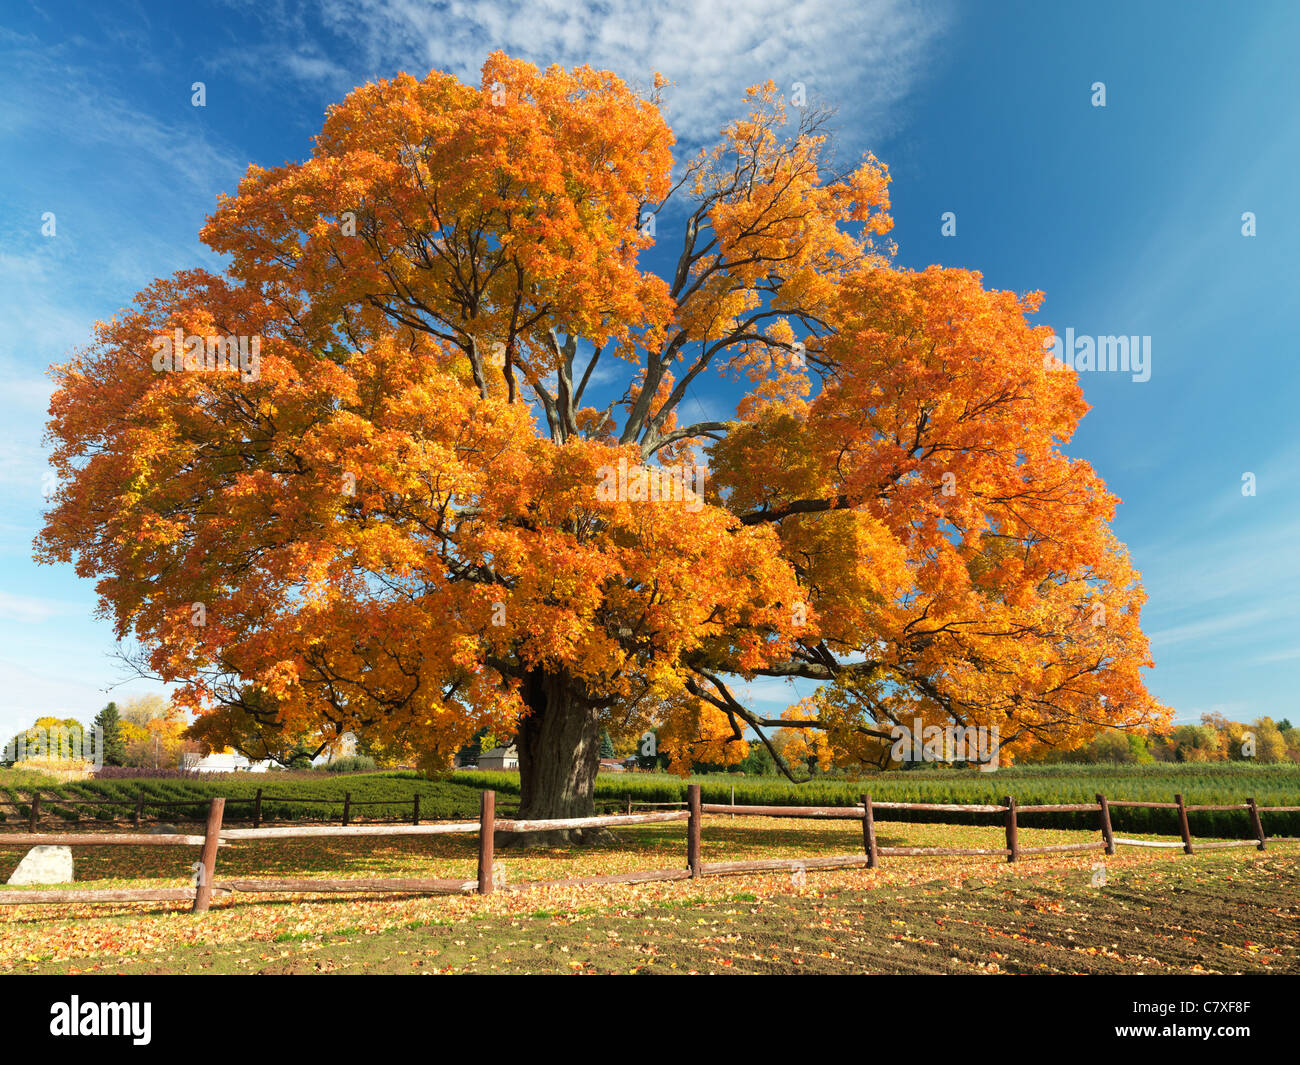 Kanada, Ontario, Fonthill, der Comfort Maple, ein Ahornbaum in voller Herbstfarbe, ist einer der ältesten Bäume Kanadas, der über 450 Jahre alt ist Stockfoto